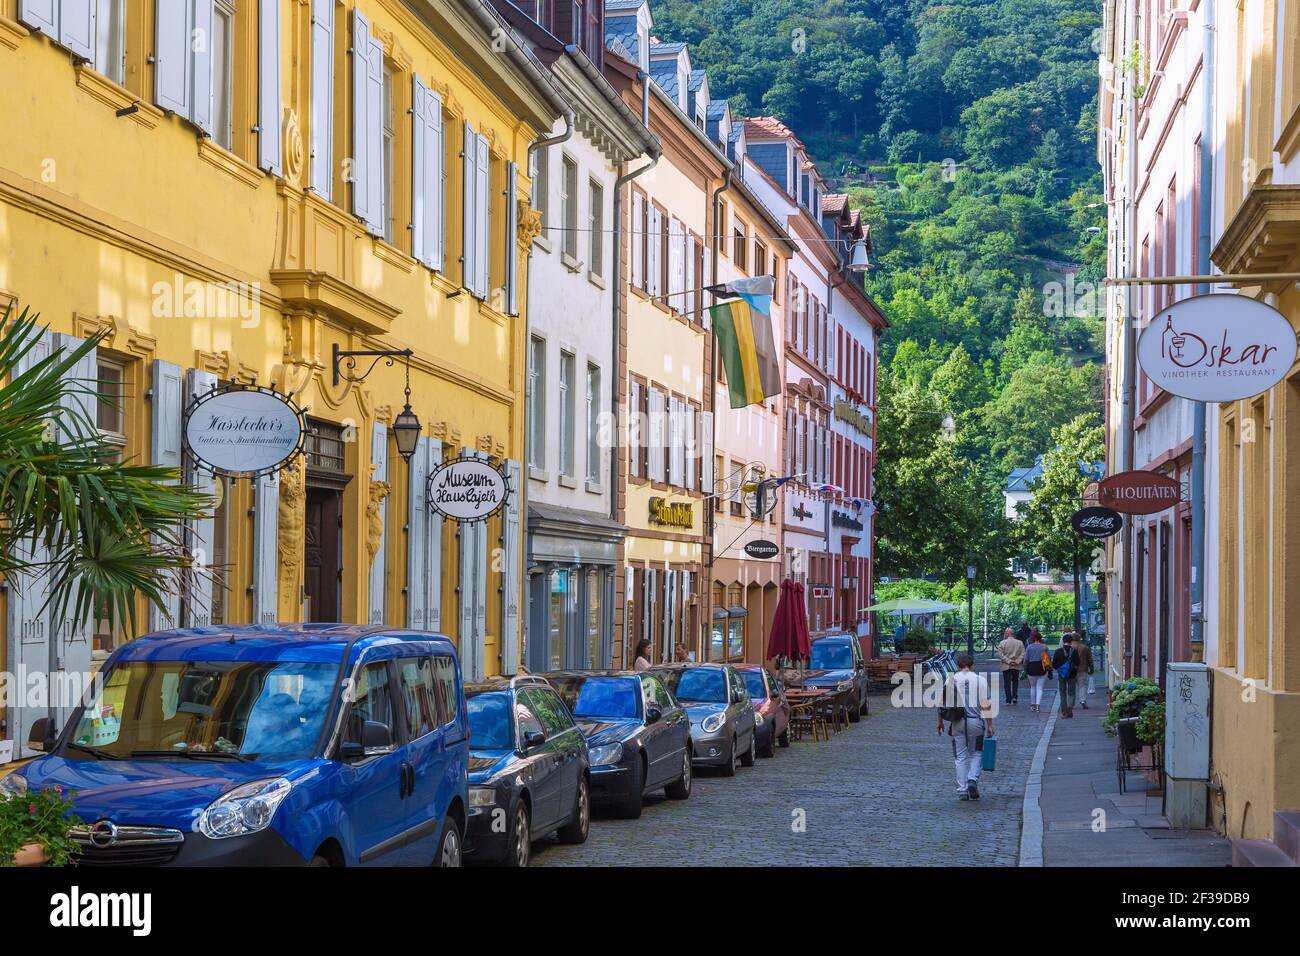 Geografia / viaggio, Germania, Baden-Wuerttemberg, Heidelberg, Haspelgasse (Haspel Alley), Informazioni-aggiuntive-diritti-liquidazione-non-disponibili Foto Stock